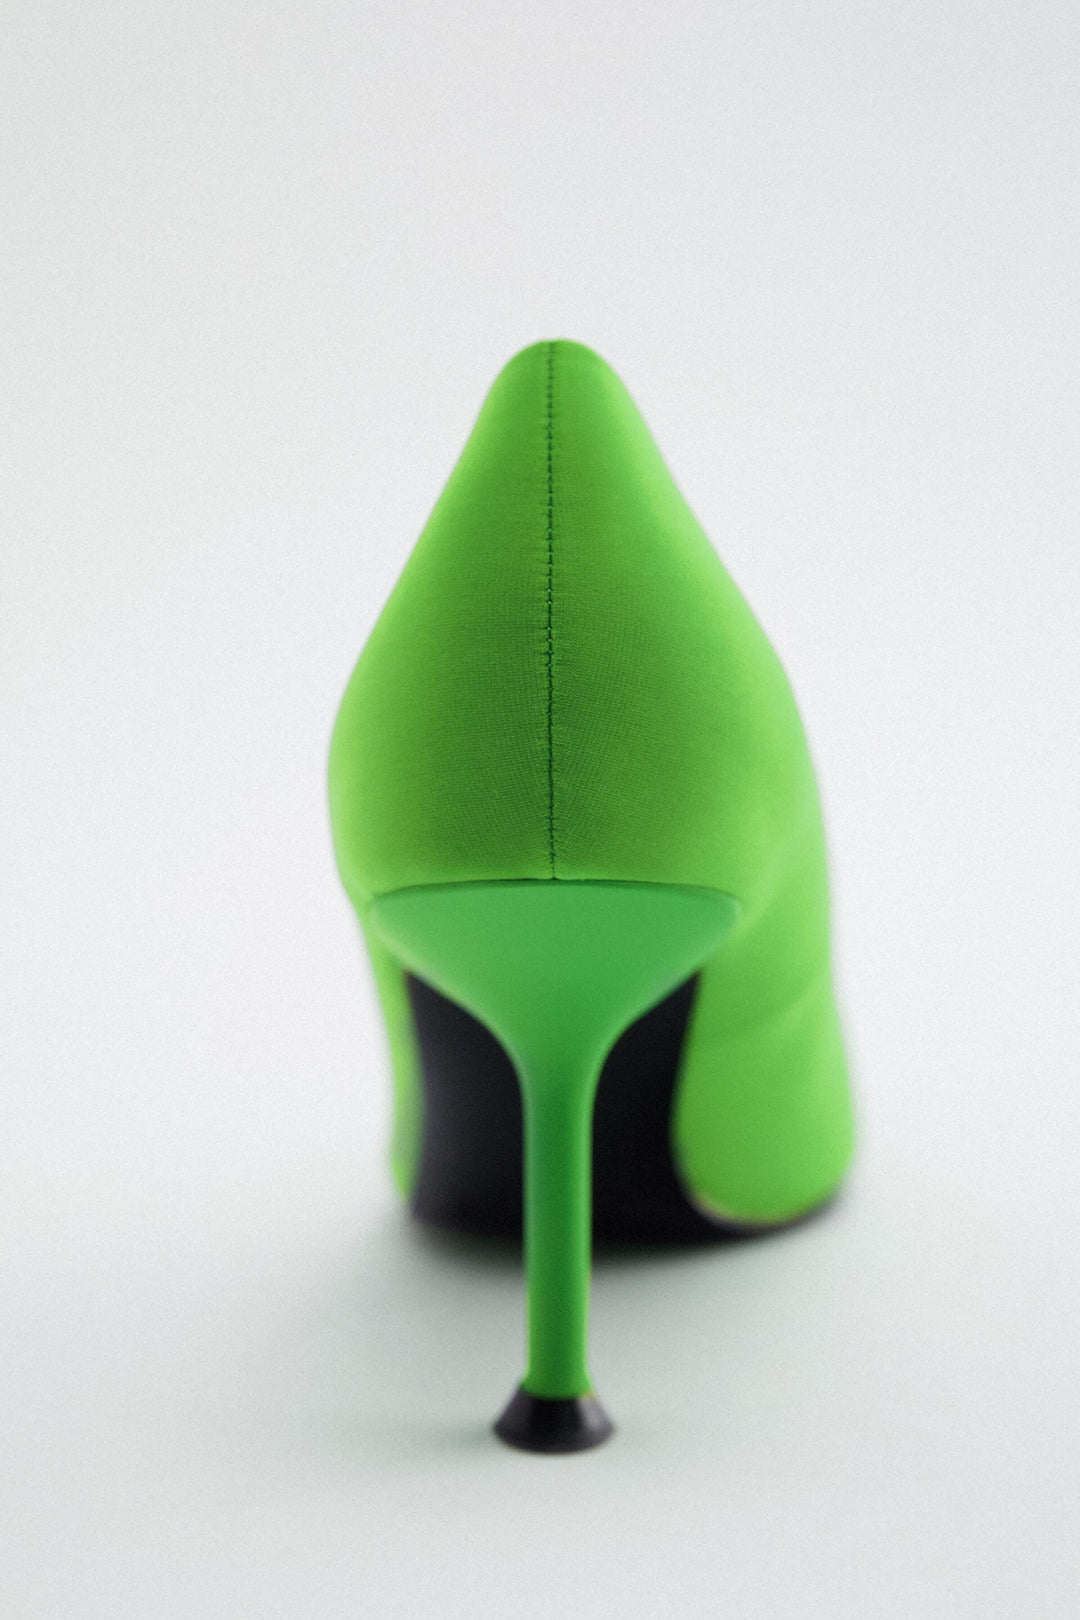 Chaussures marque_Zara, genre_Femme Moudda Tunisie4